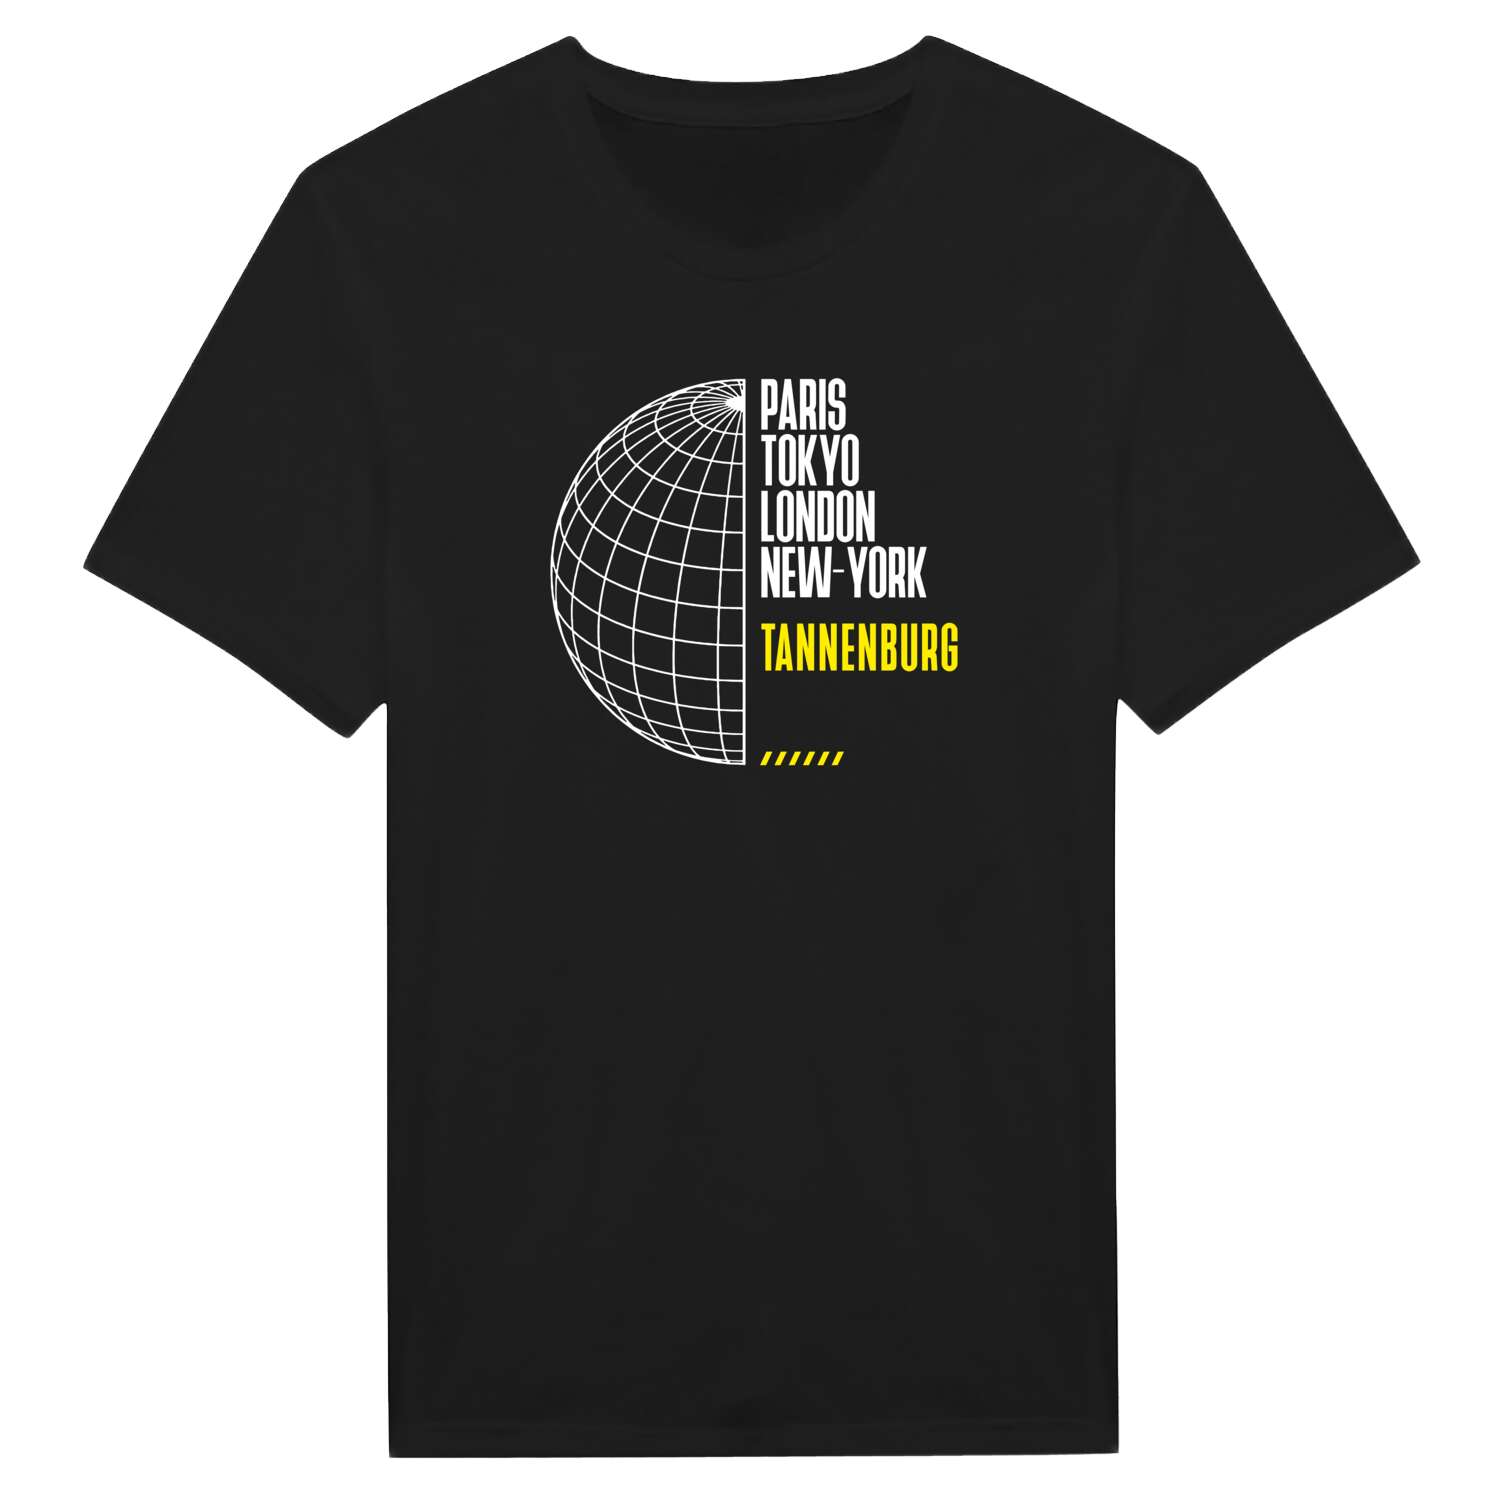 Tannenburg T-Shirt »Paris Tokyo London«